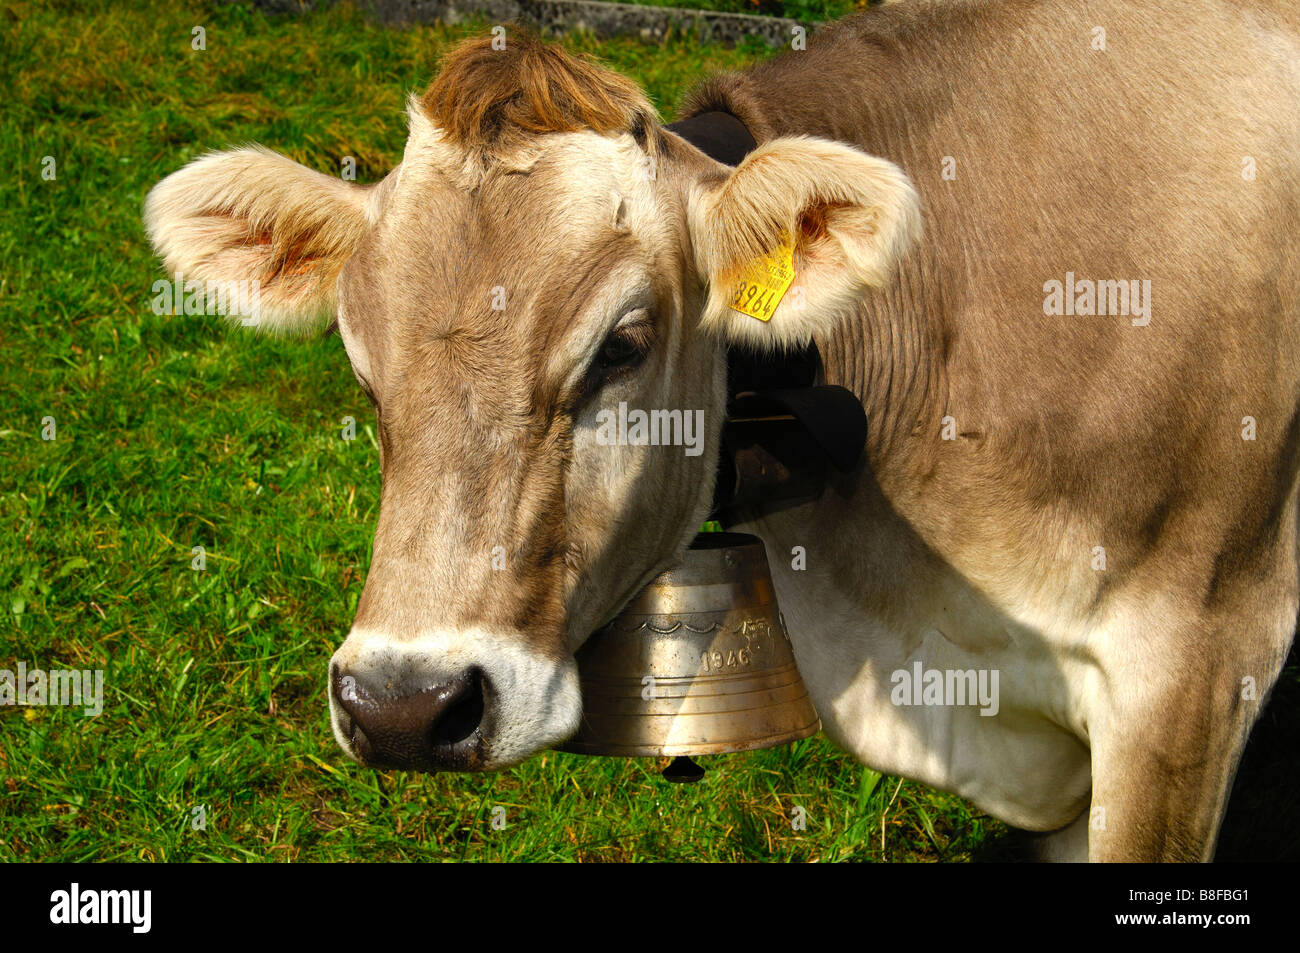 Les bovins sans cornes Suisse brune avec une marque auriculaire et une vache cloche autour du cou à la recherche dans l'appareil photo, Canton de Vaud, Suisse Banque D'Images